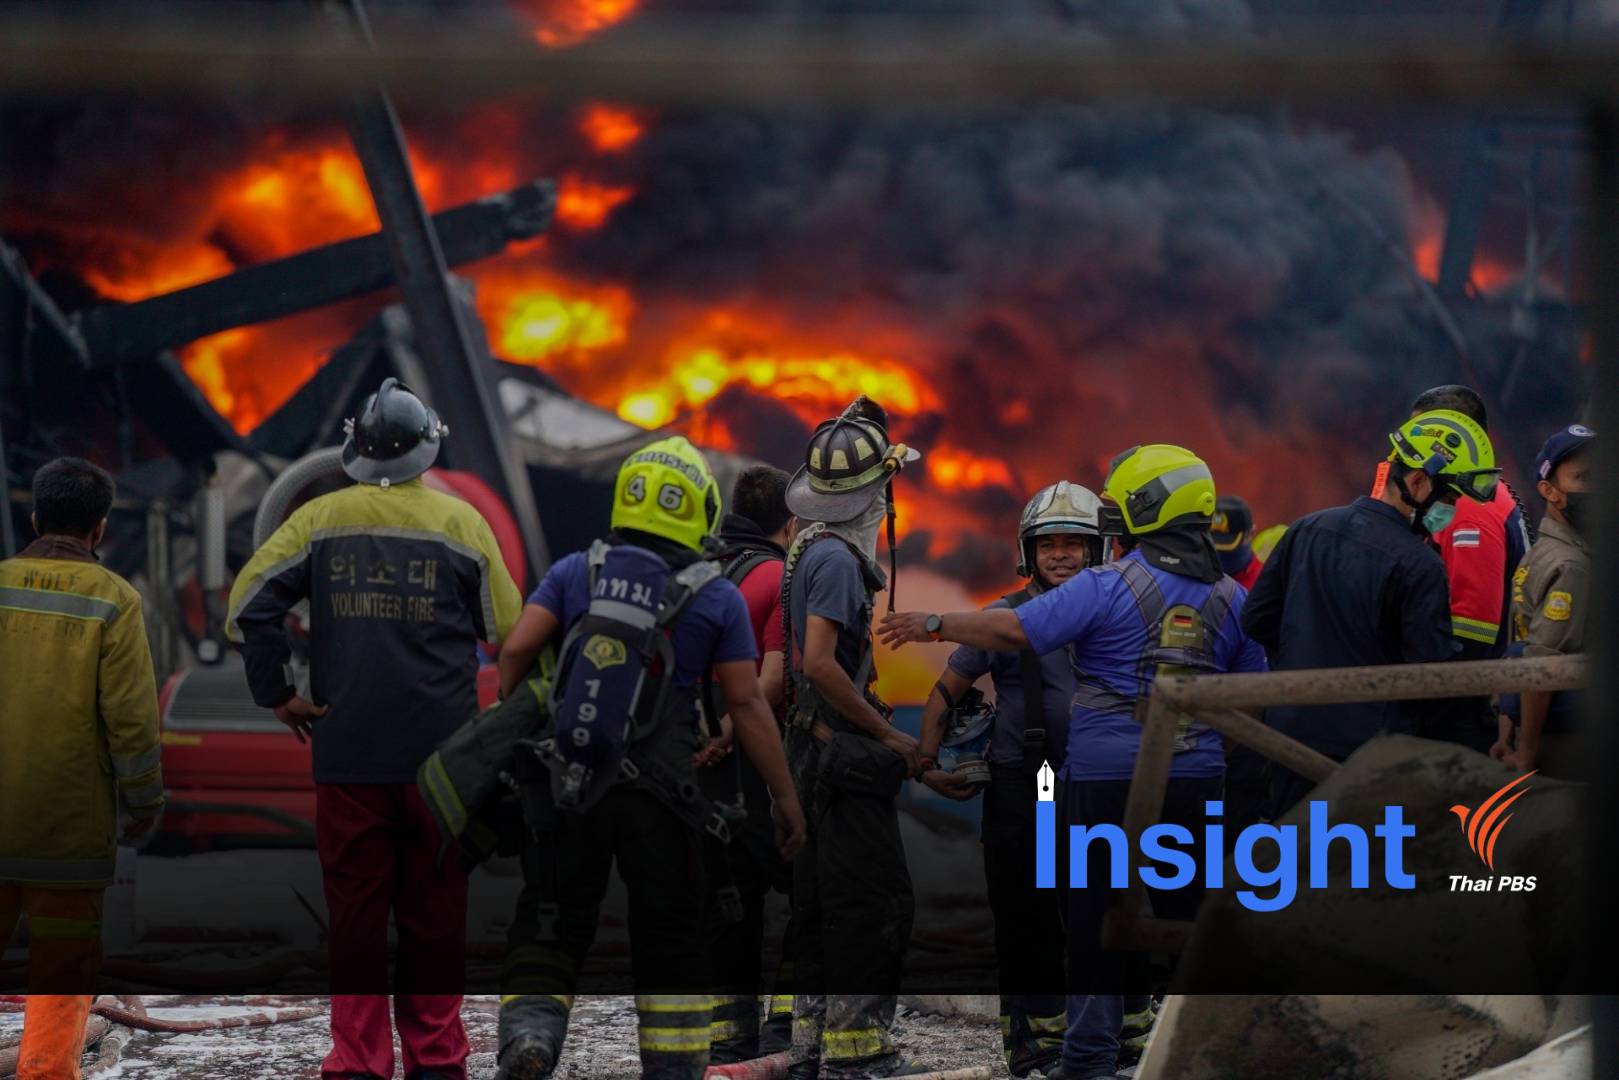 ค้นต้นเหตุ "อุบัติภัยสารเคมี" ไฟไหม้โรงงาน สุขภาพคนเสี่ยงระยะยาว